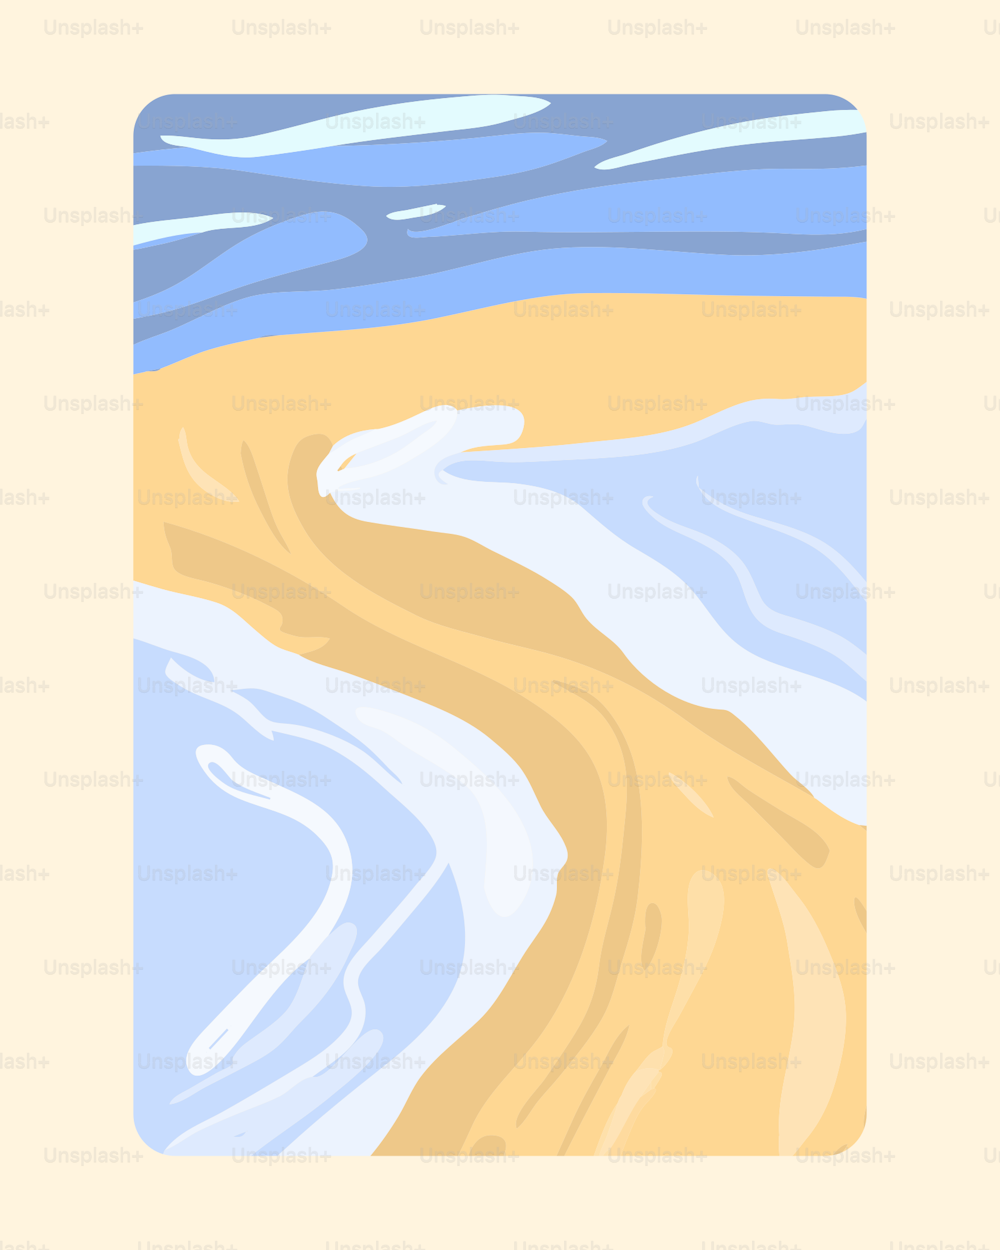 Una imagen de una playa con olas y arena